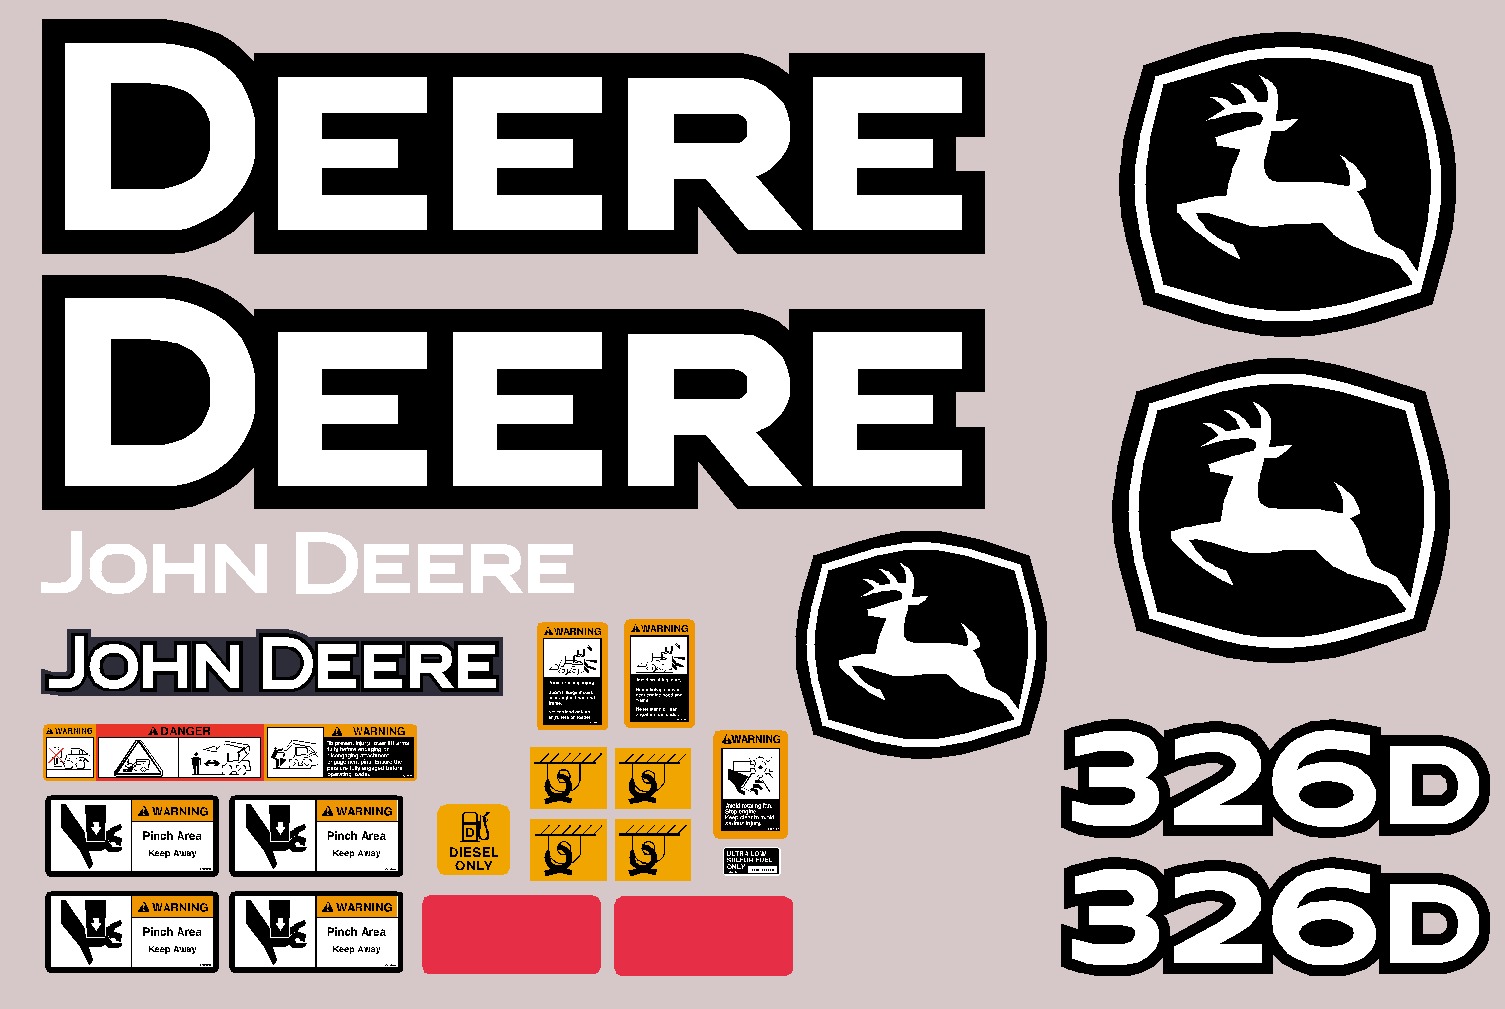 Deere Skid Steer Loaders 326D Decal Packages